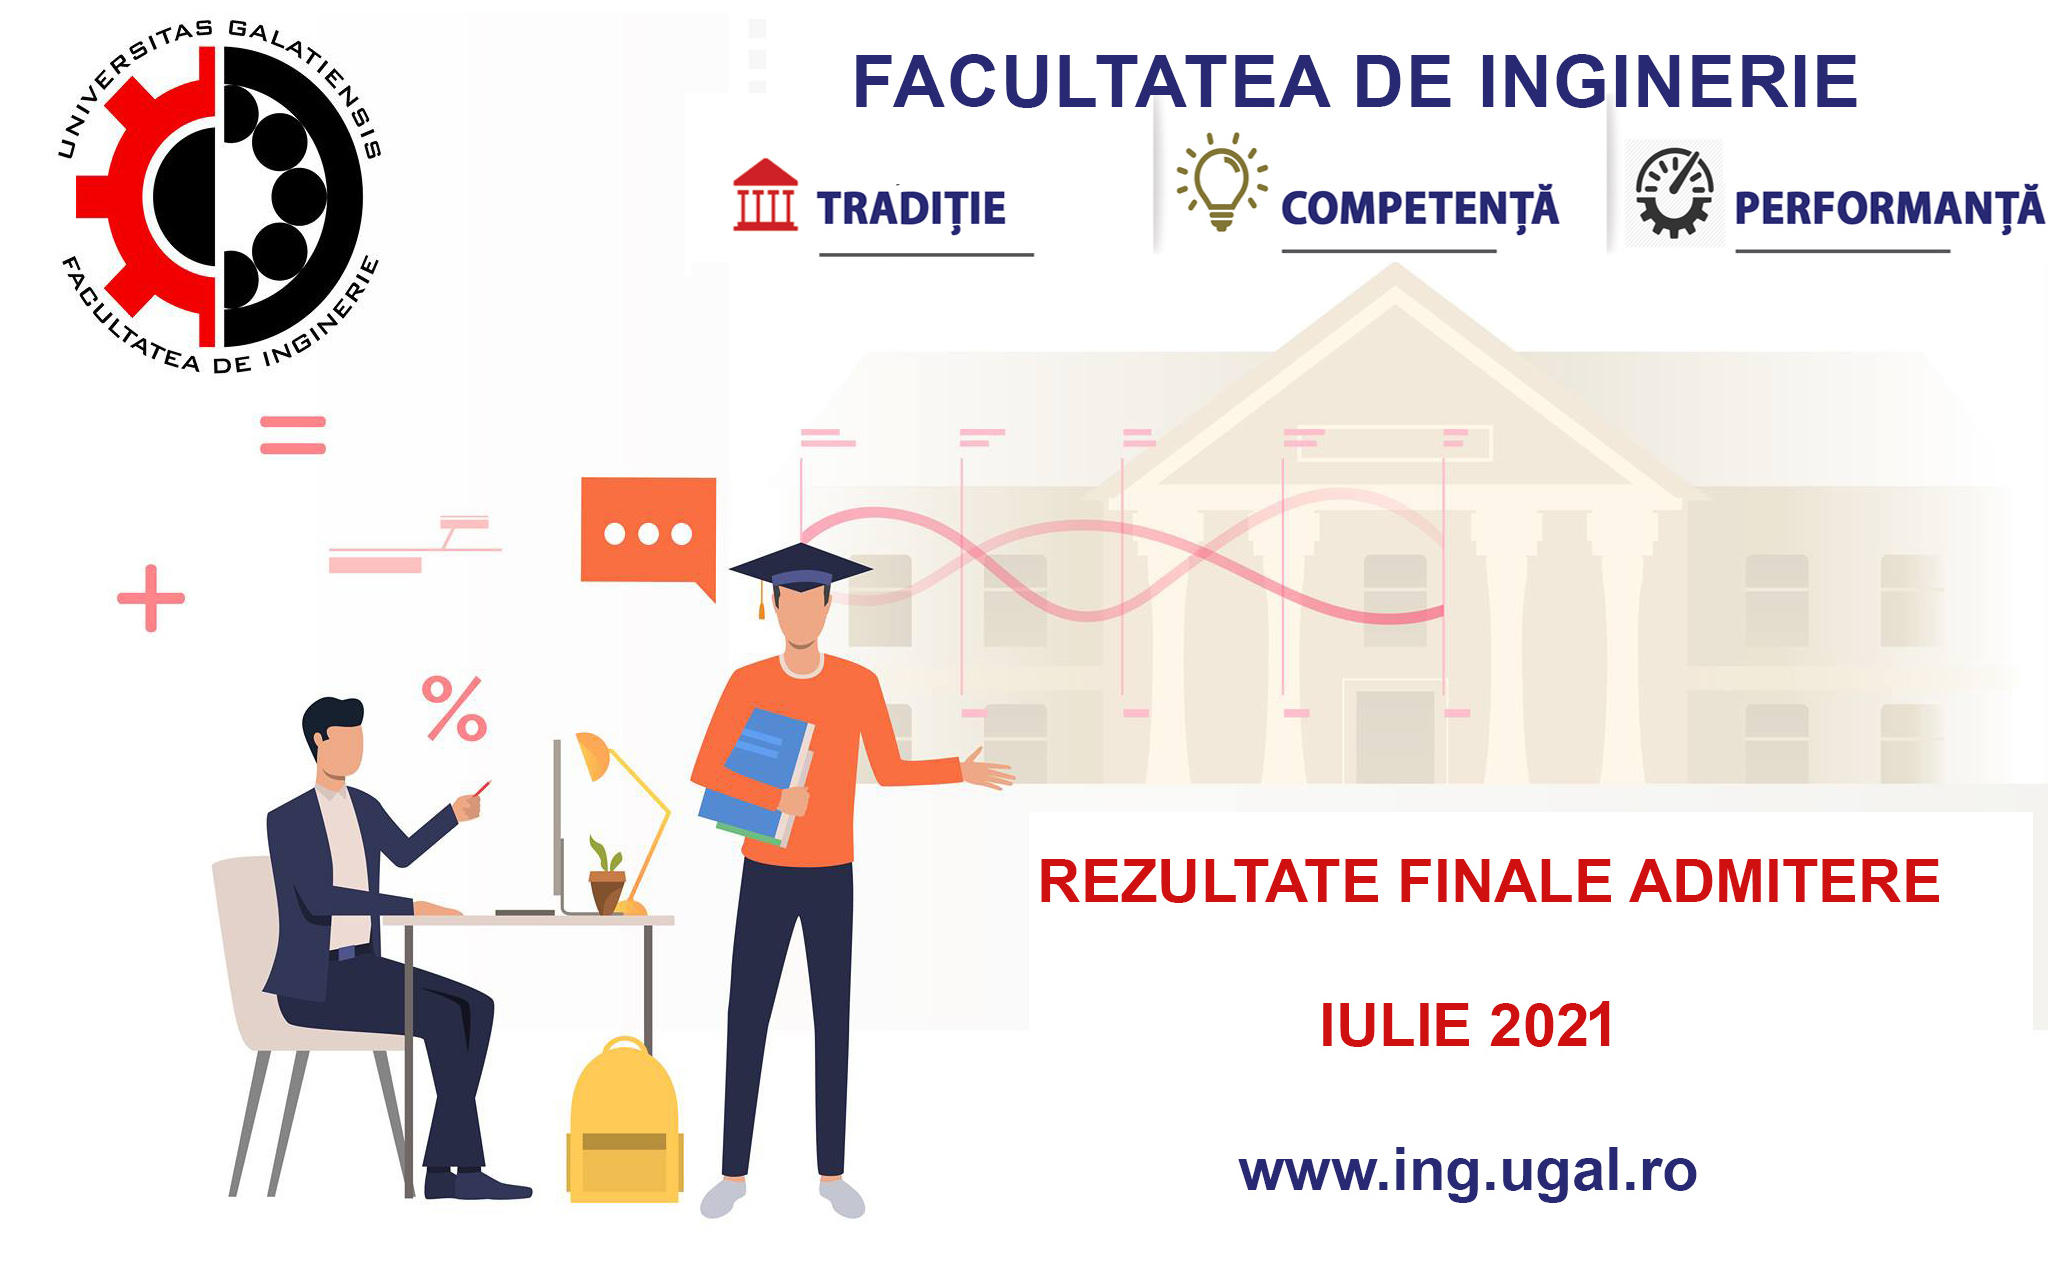 Rezultate finale admitere - Facultatea de Inginerie - Iulie 2021